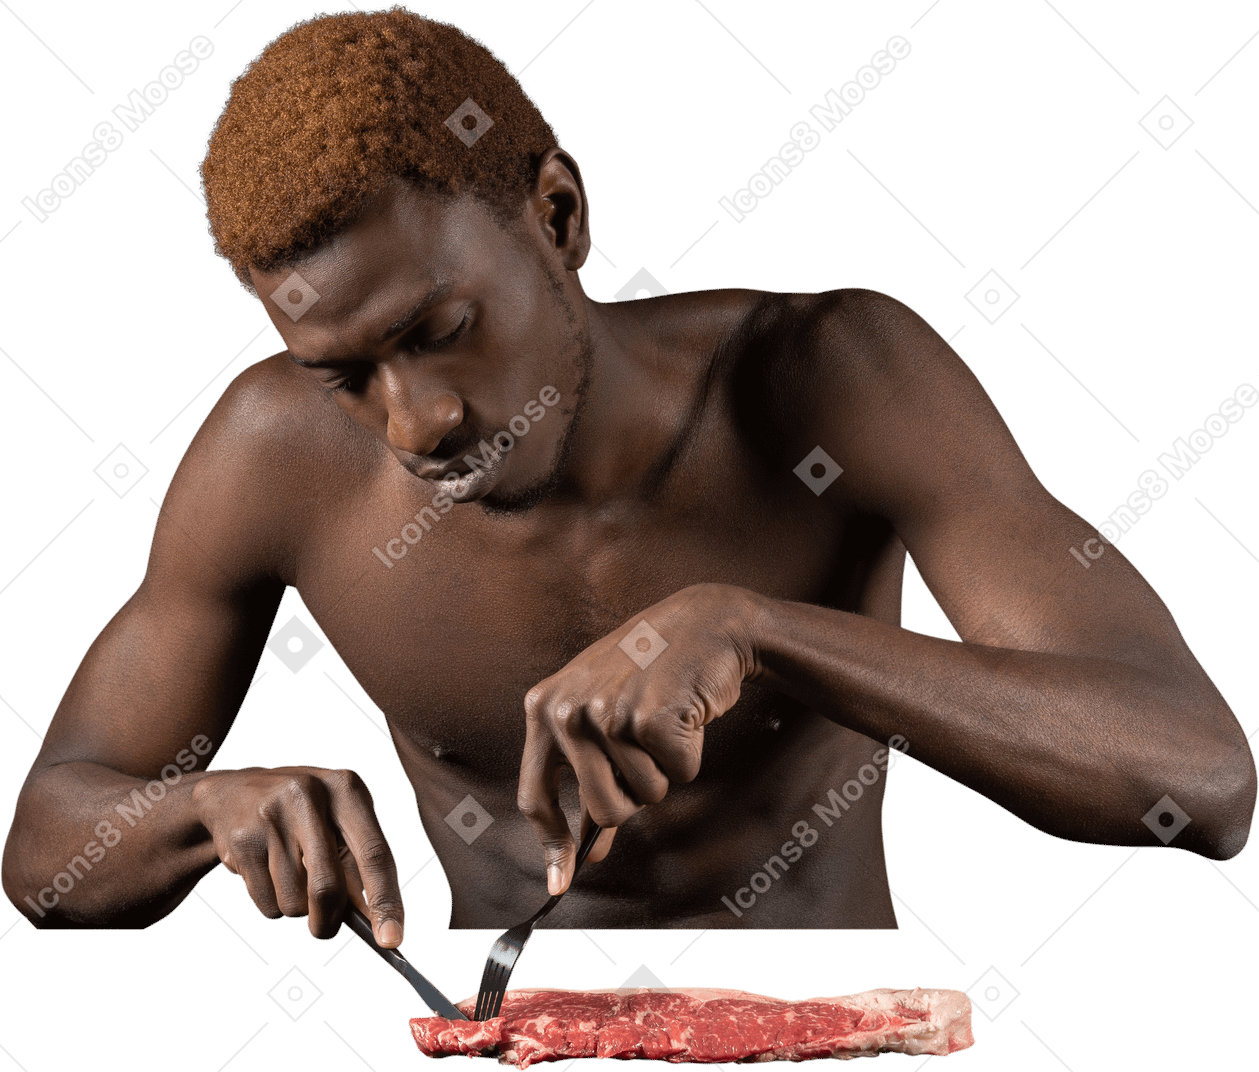 Vista frontal de um jovem afro cortando carne